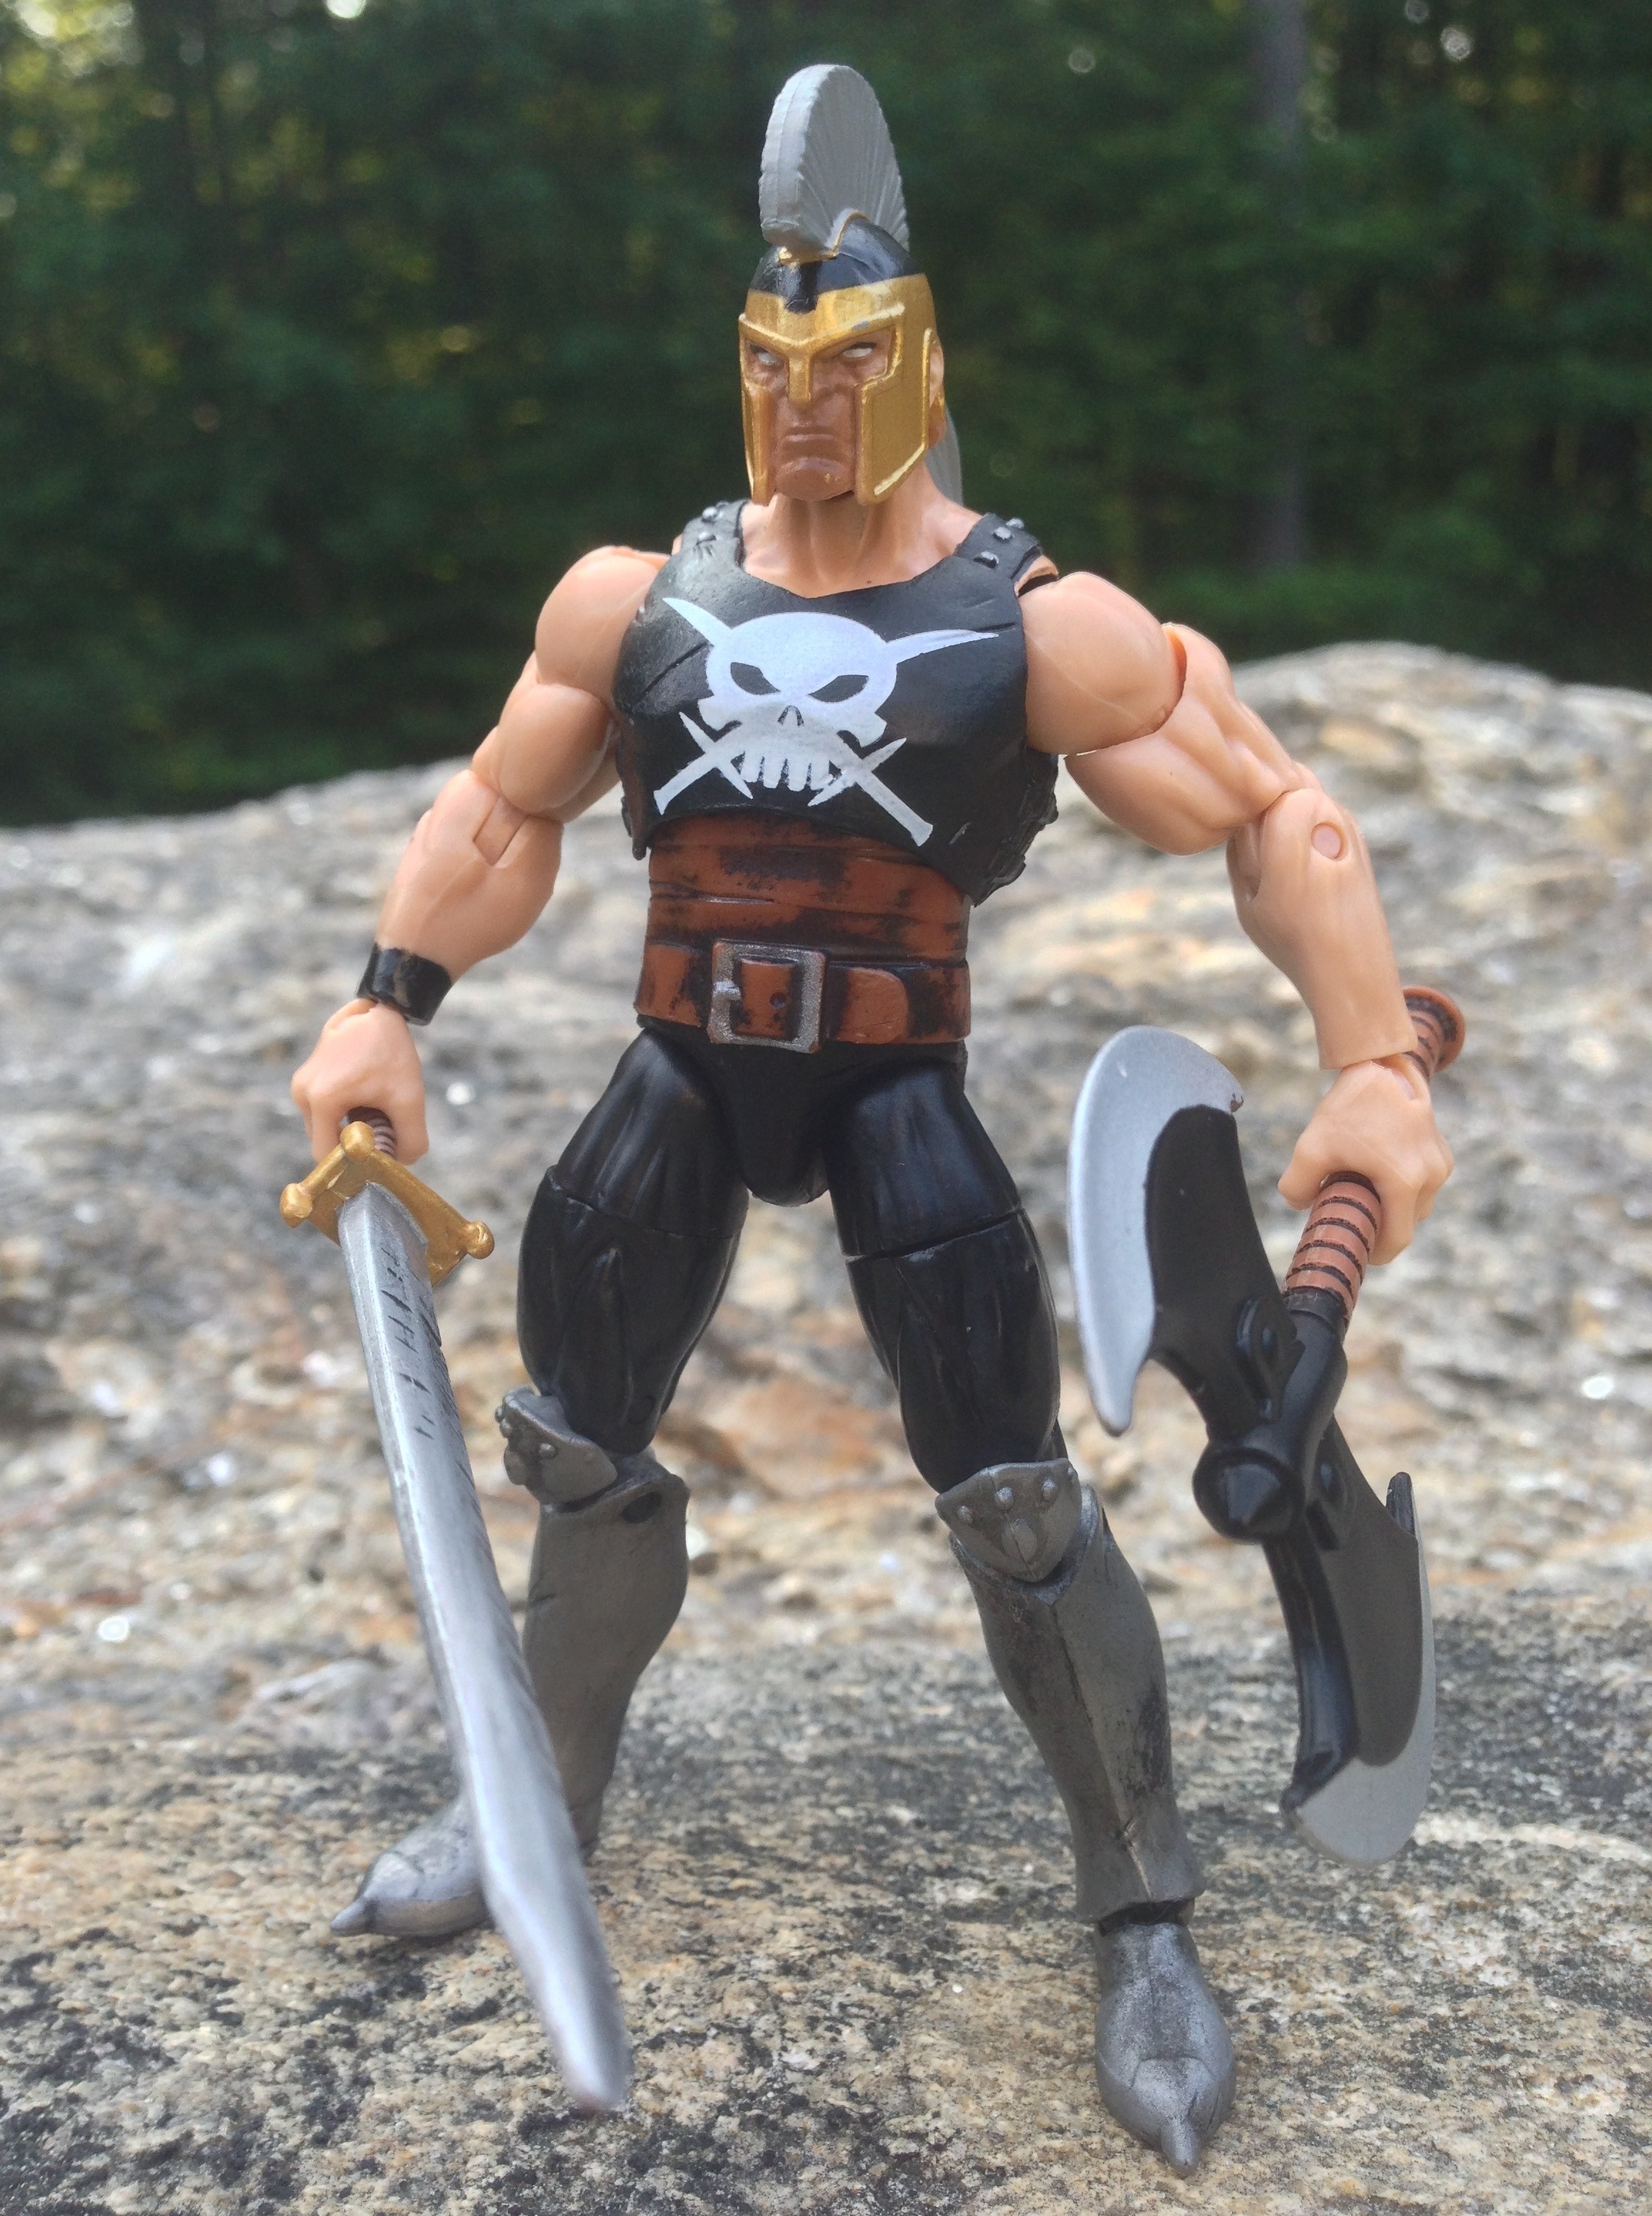 Gambit - Horseman of Death (Marvel Legends) Custom Action Figure